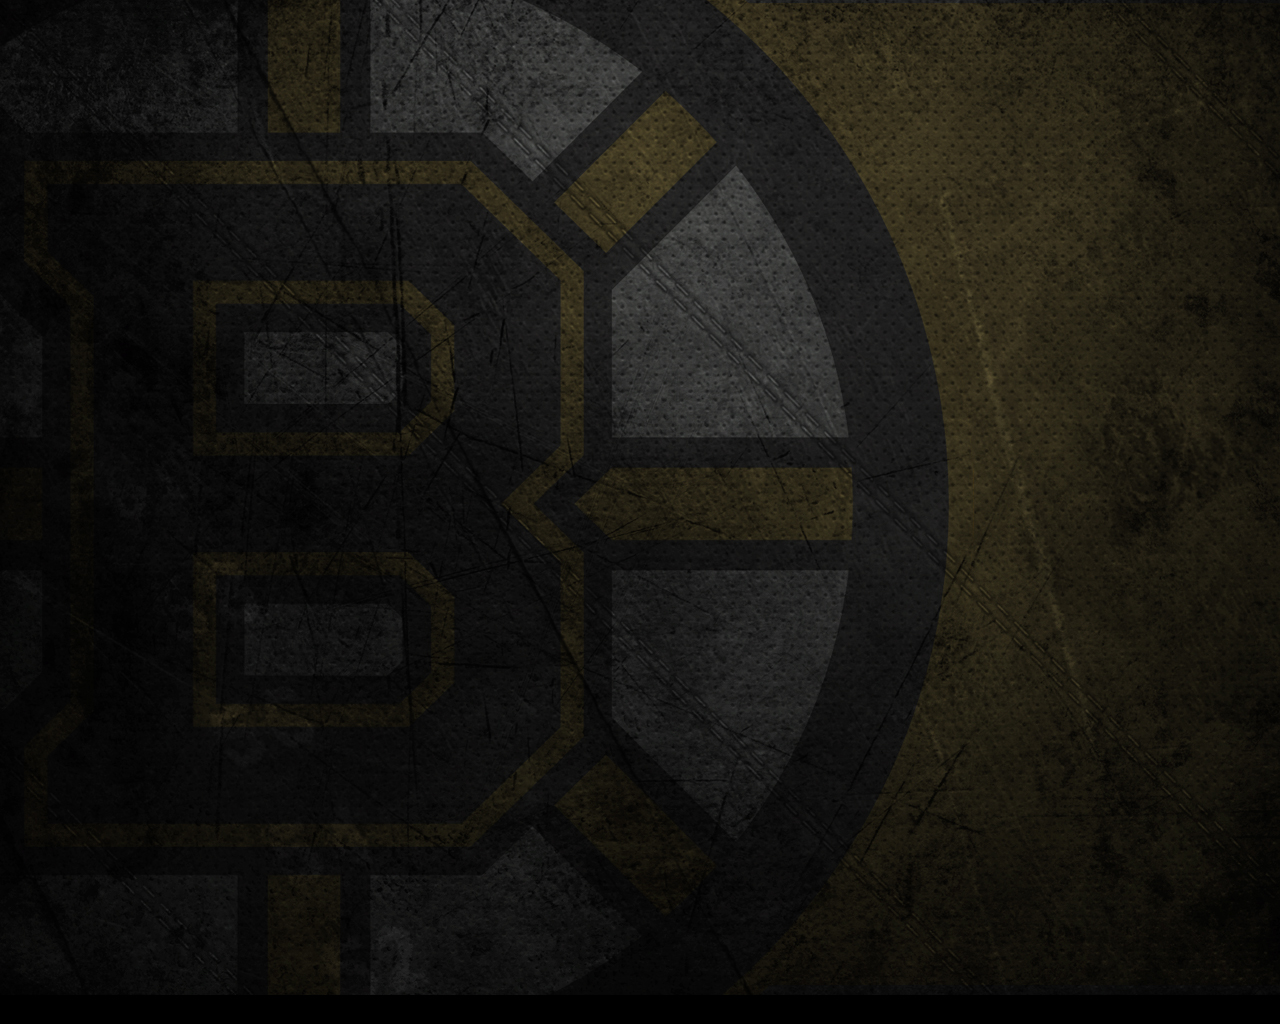 Bruins Wallpaper